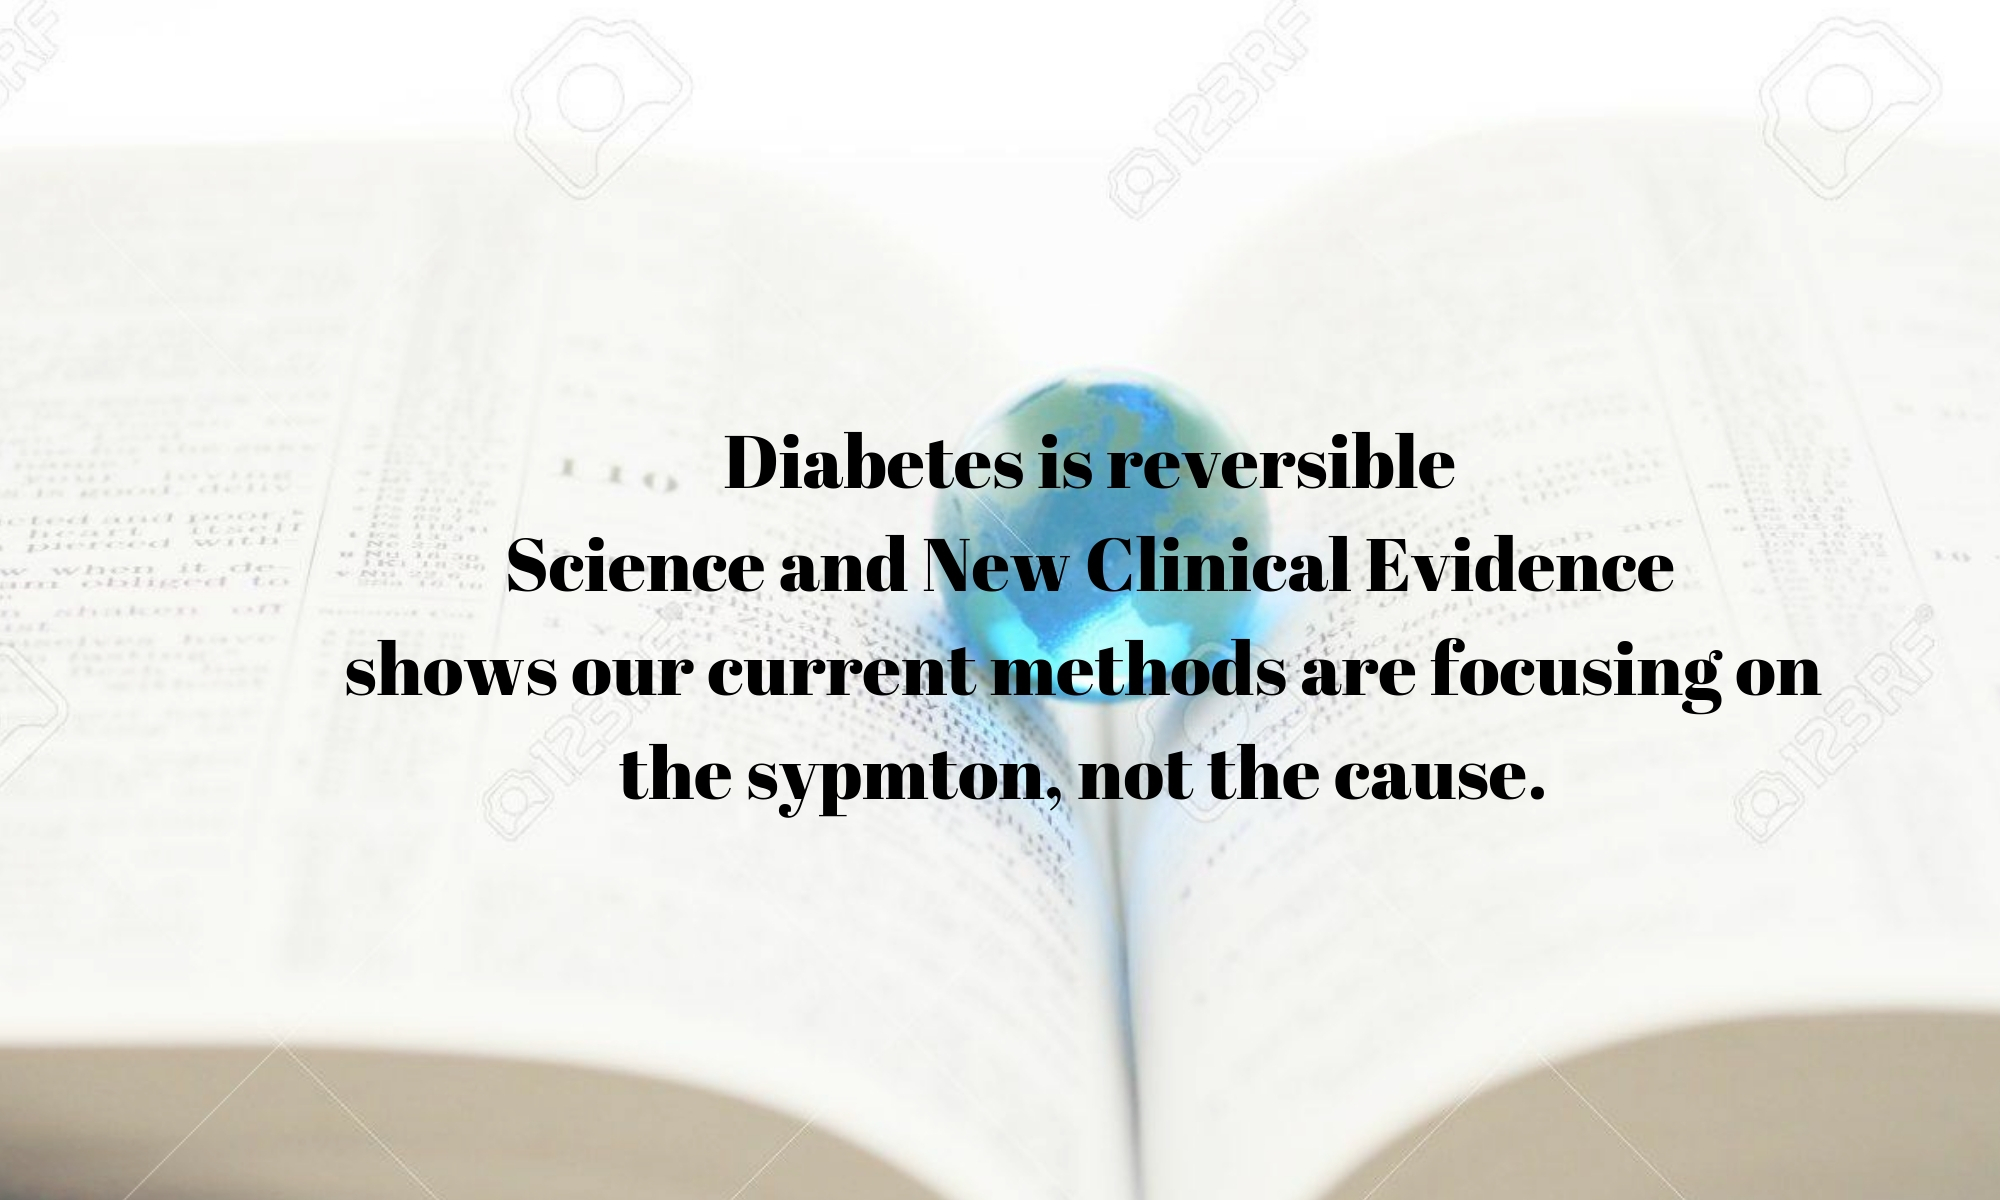 Type 2 Diabetes is reversible